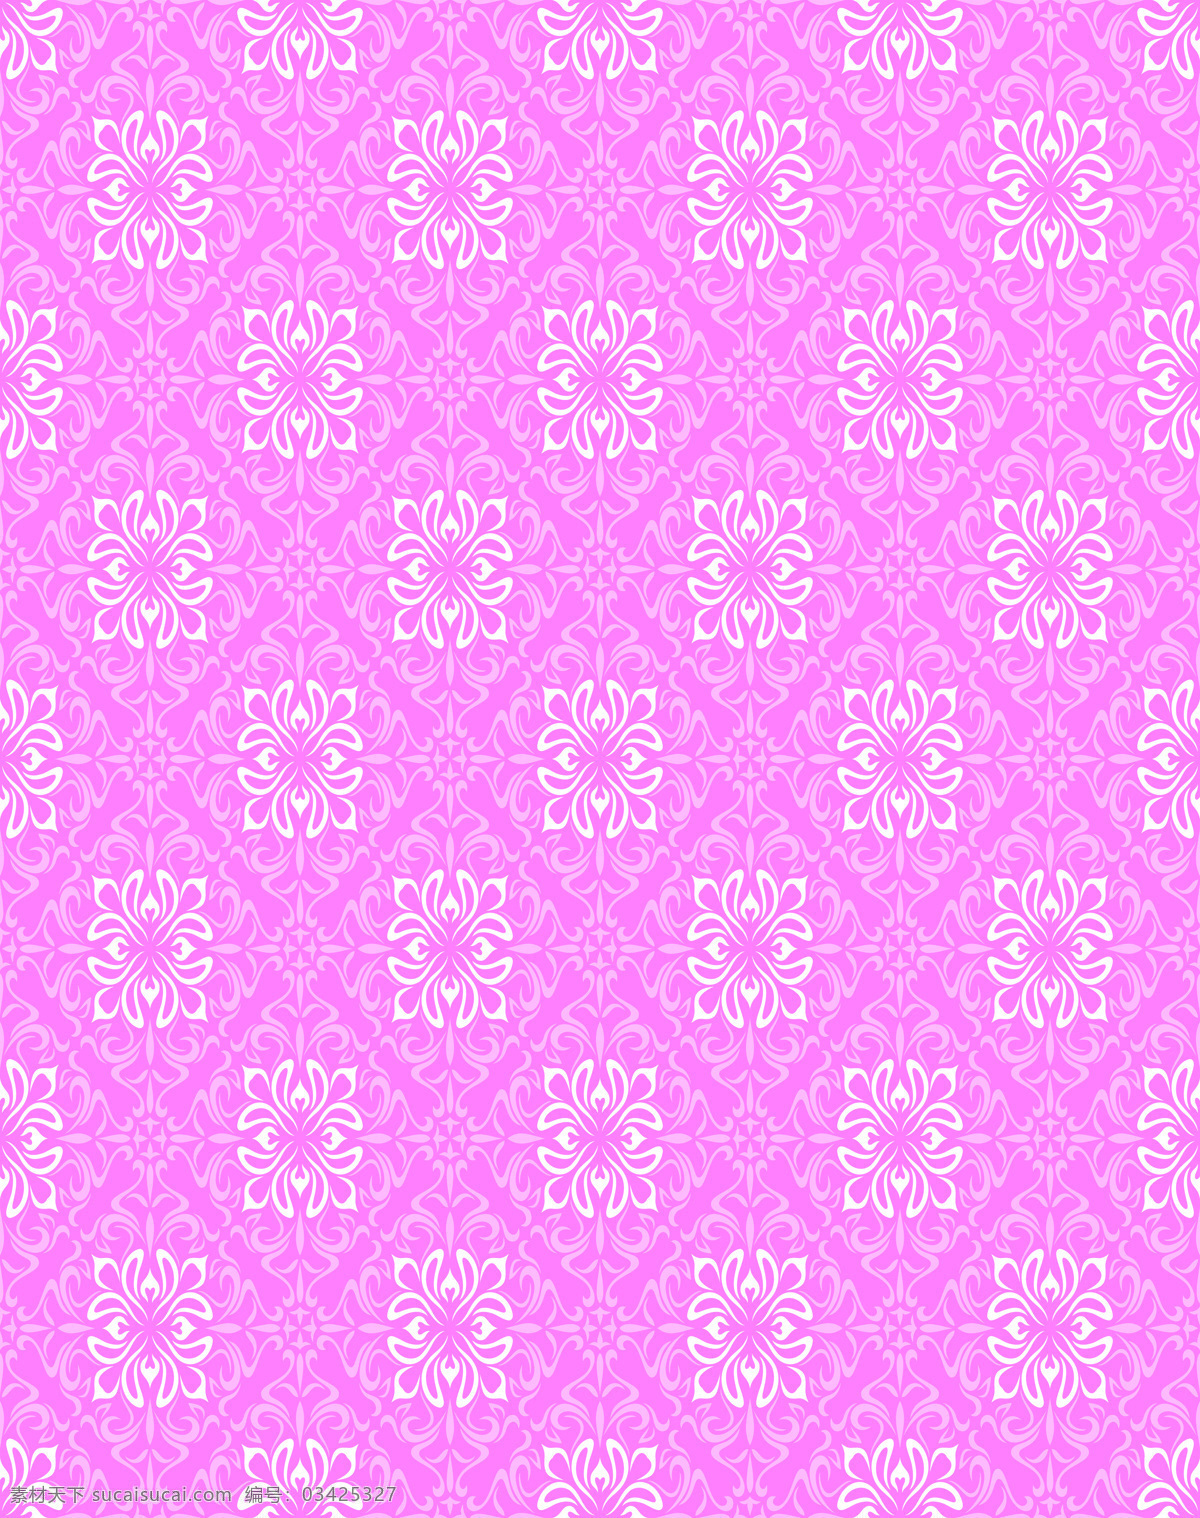 底纹边框 粉色 花边花纹 花纹 欧式 欧式底纹 欧式花纹 模板下载 设计素材 粉红恋曲 装饰素材